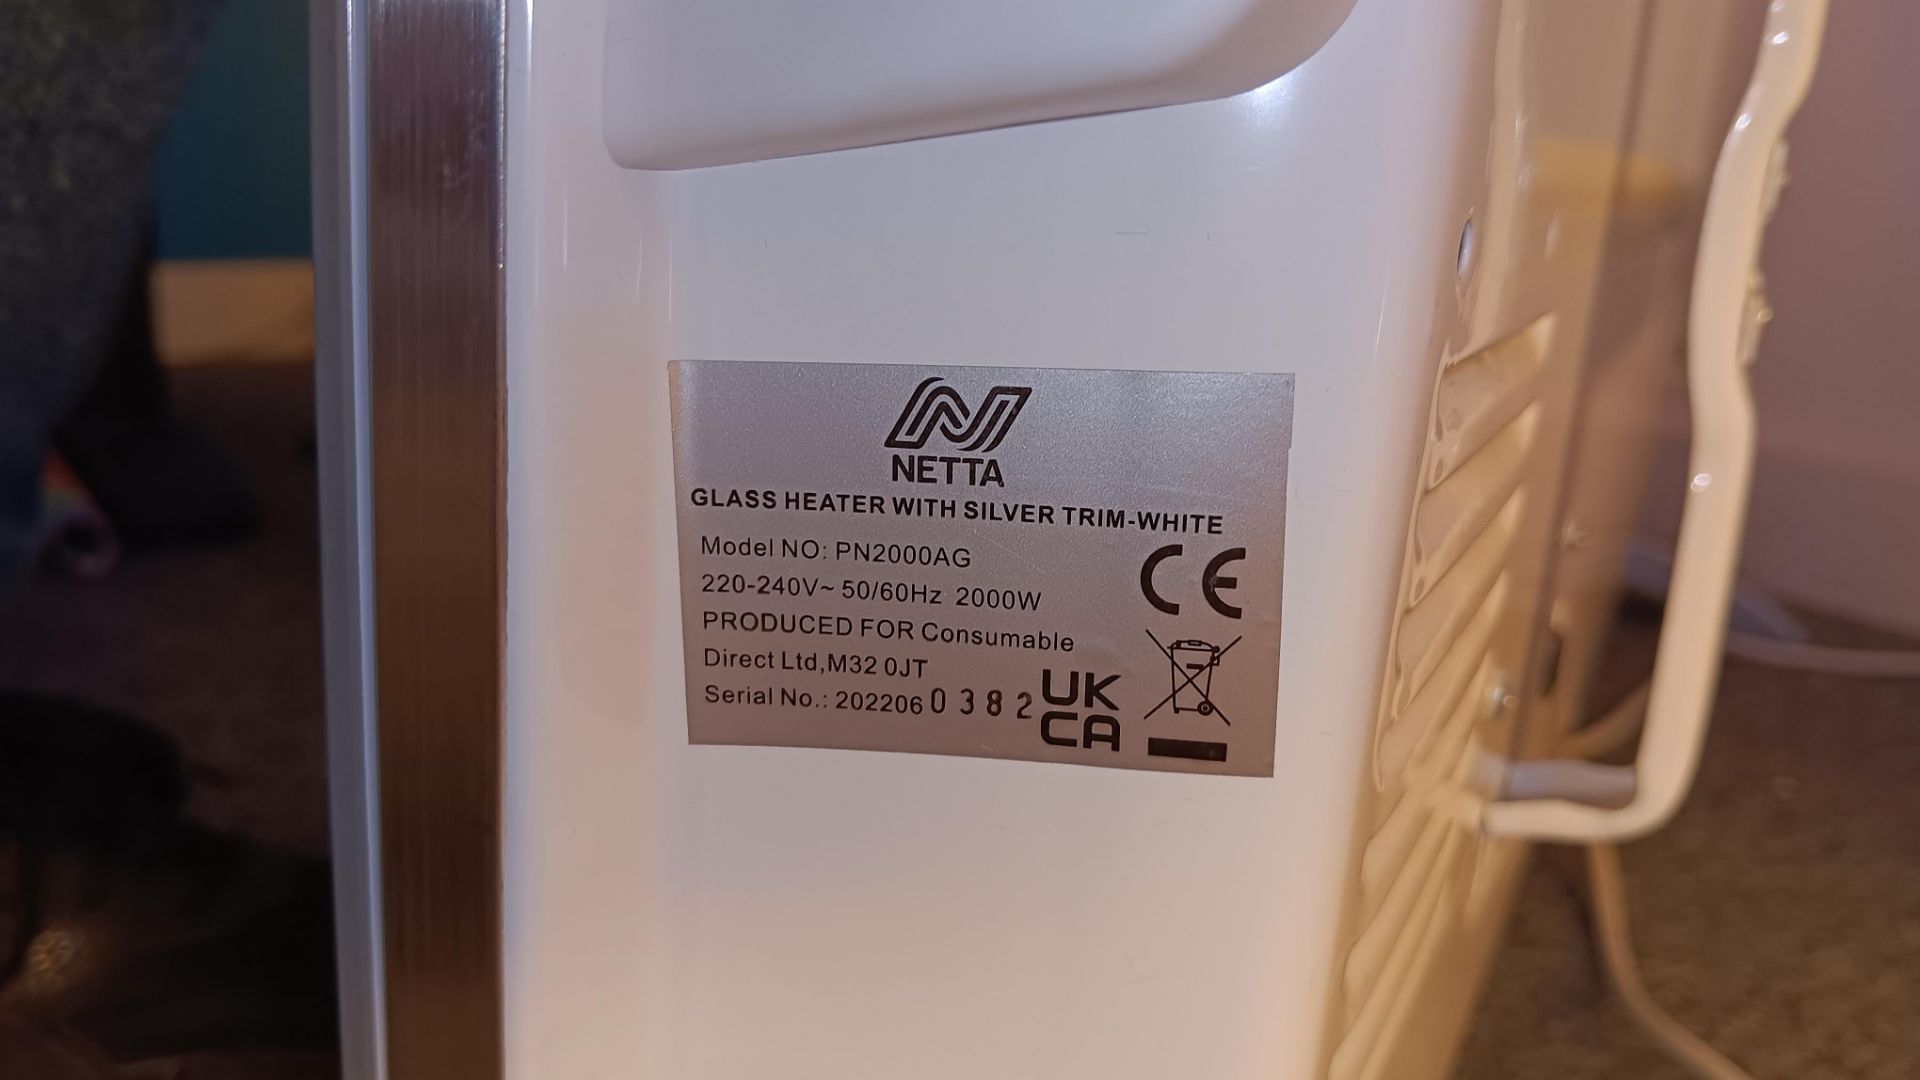 Netta PN2000AG Glass panel heater, serial number 2022060382 and Amazon Basics desktop paper shredder - Image 2 of 4